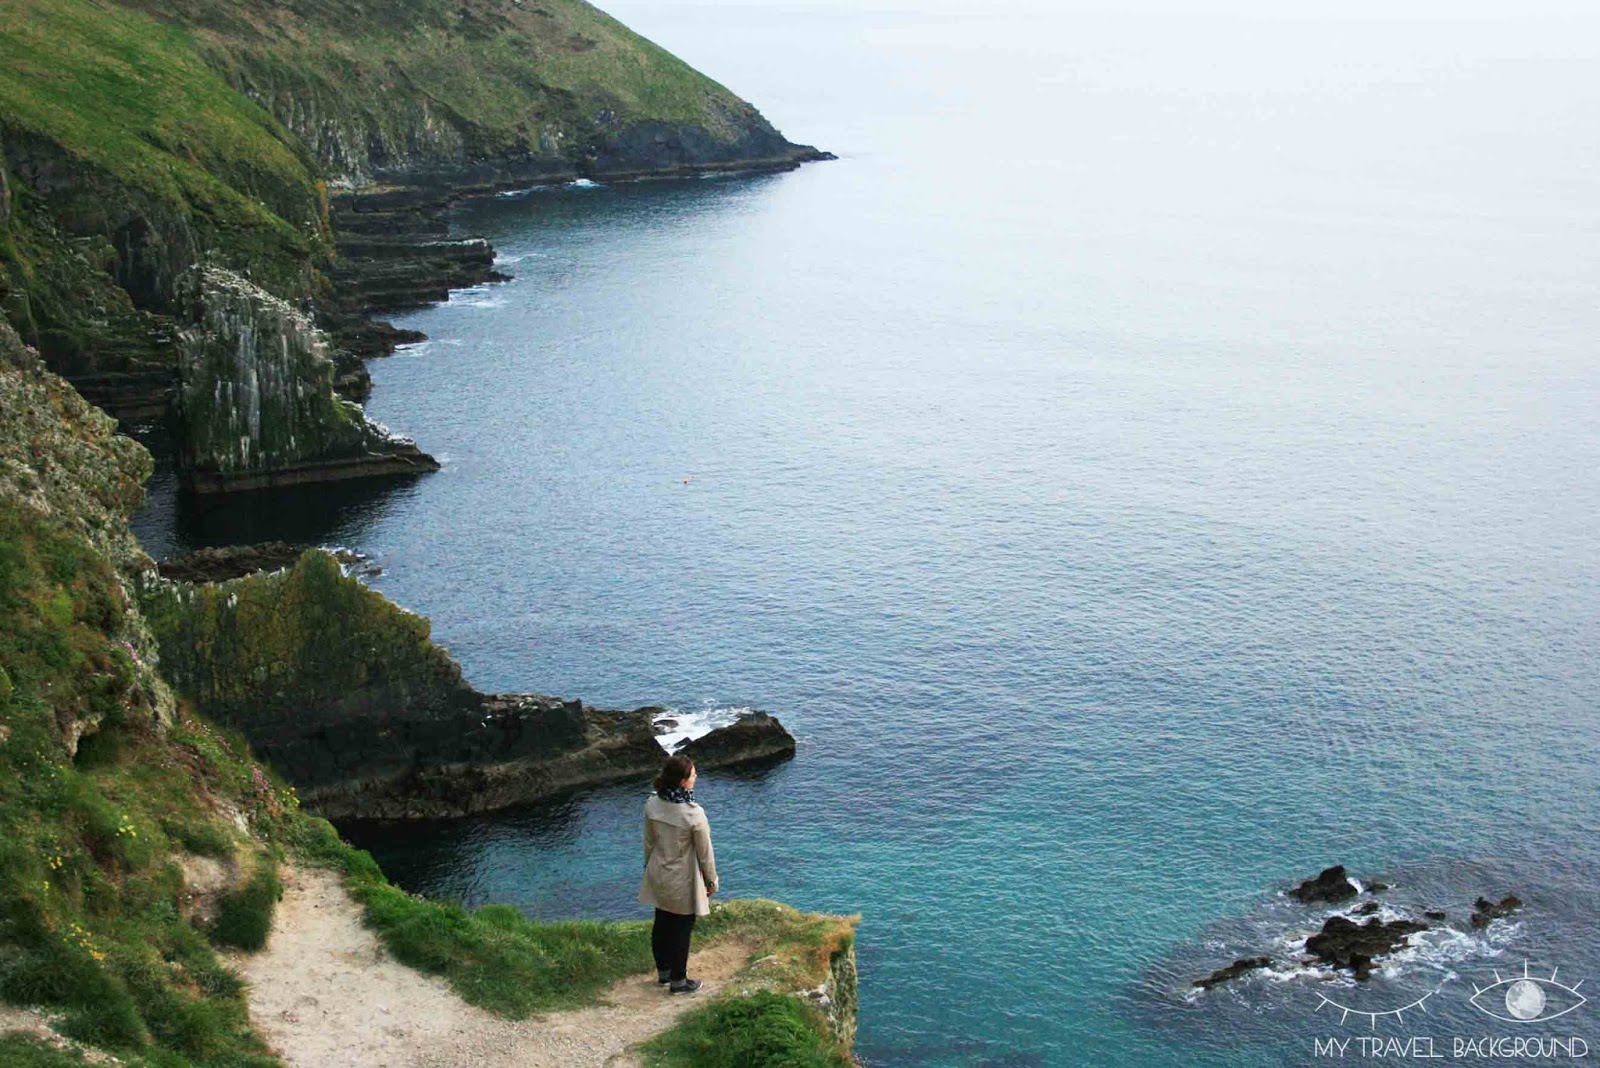 My Travel Background : Mon Road Trip de 2 semaines en Irlande : itinéraire & infos pratiques